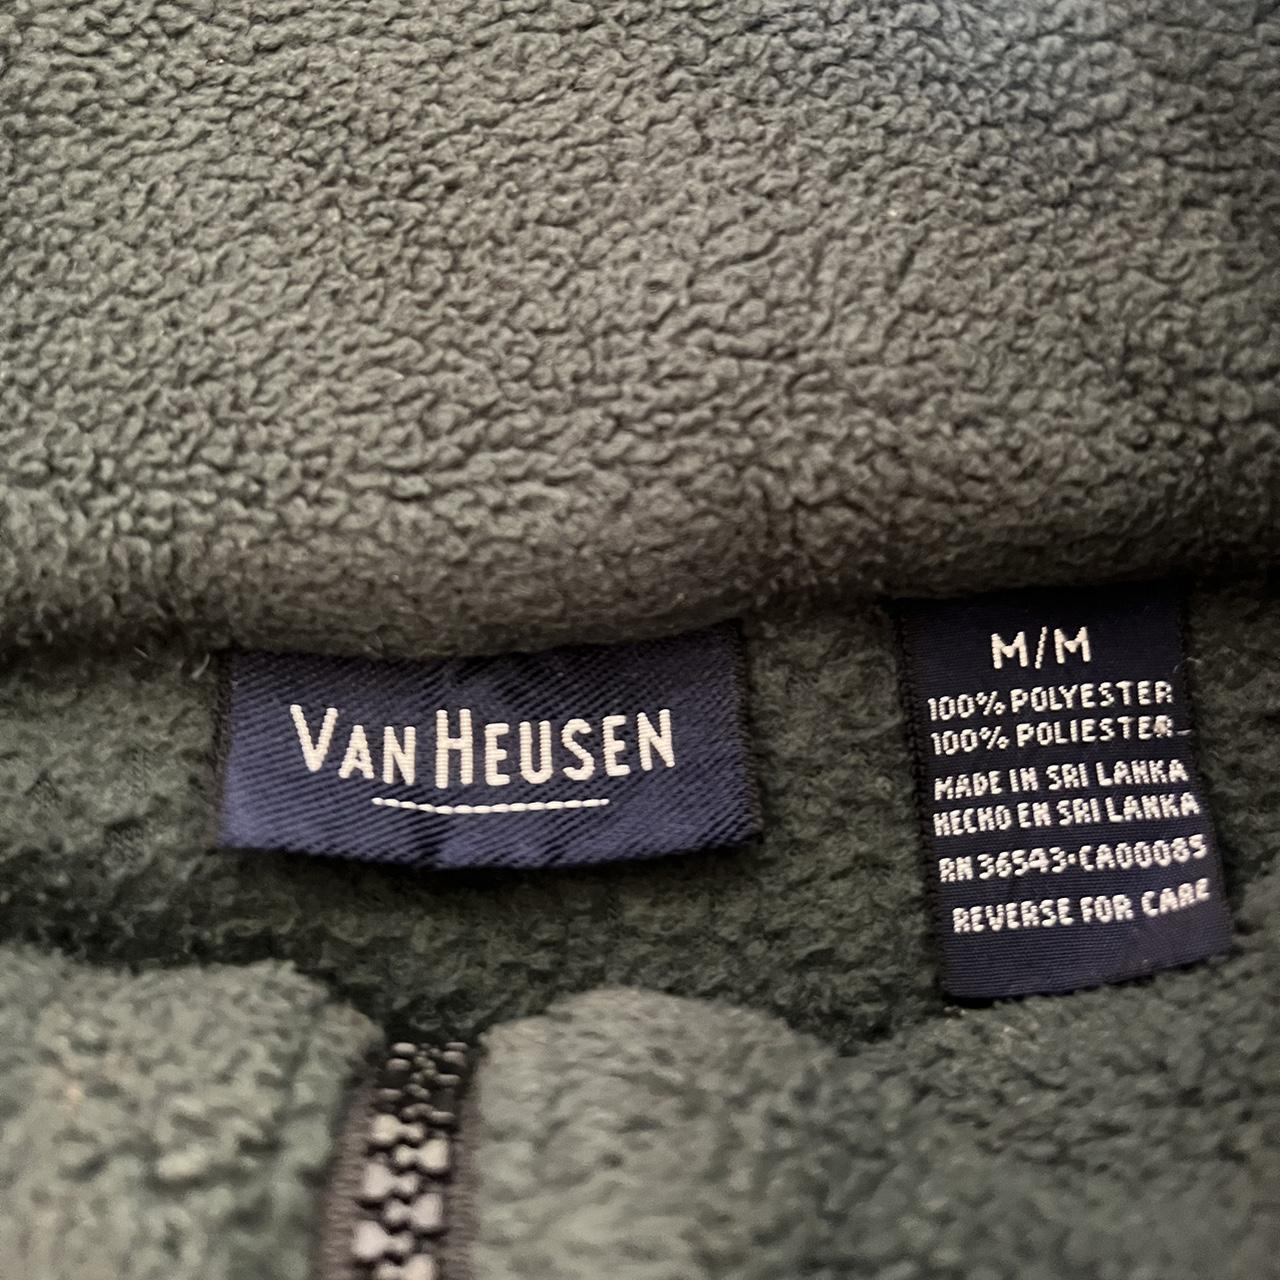 Van Heusen green zip up fleece sweater. Worn but in... - Depop